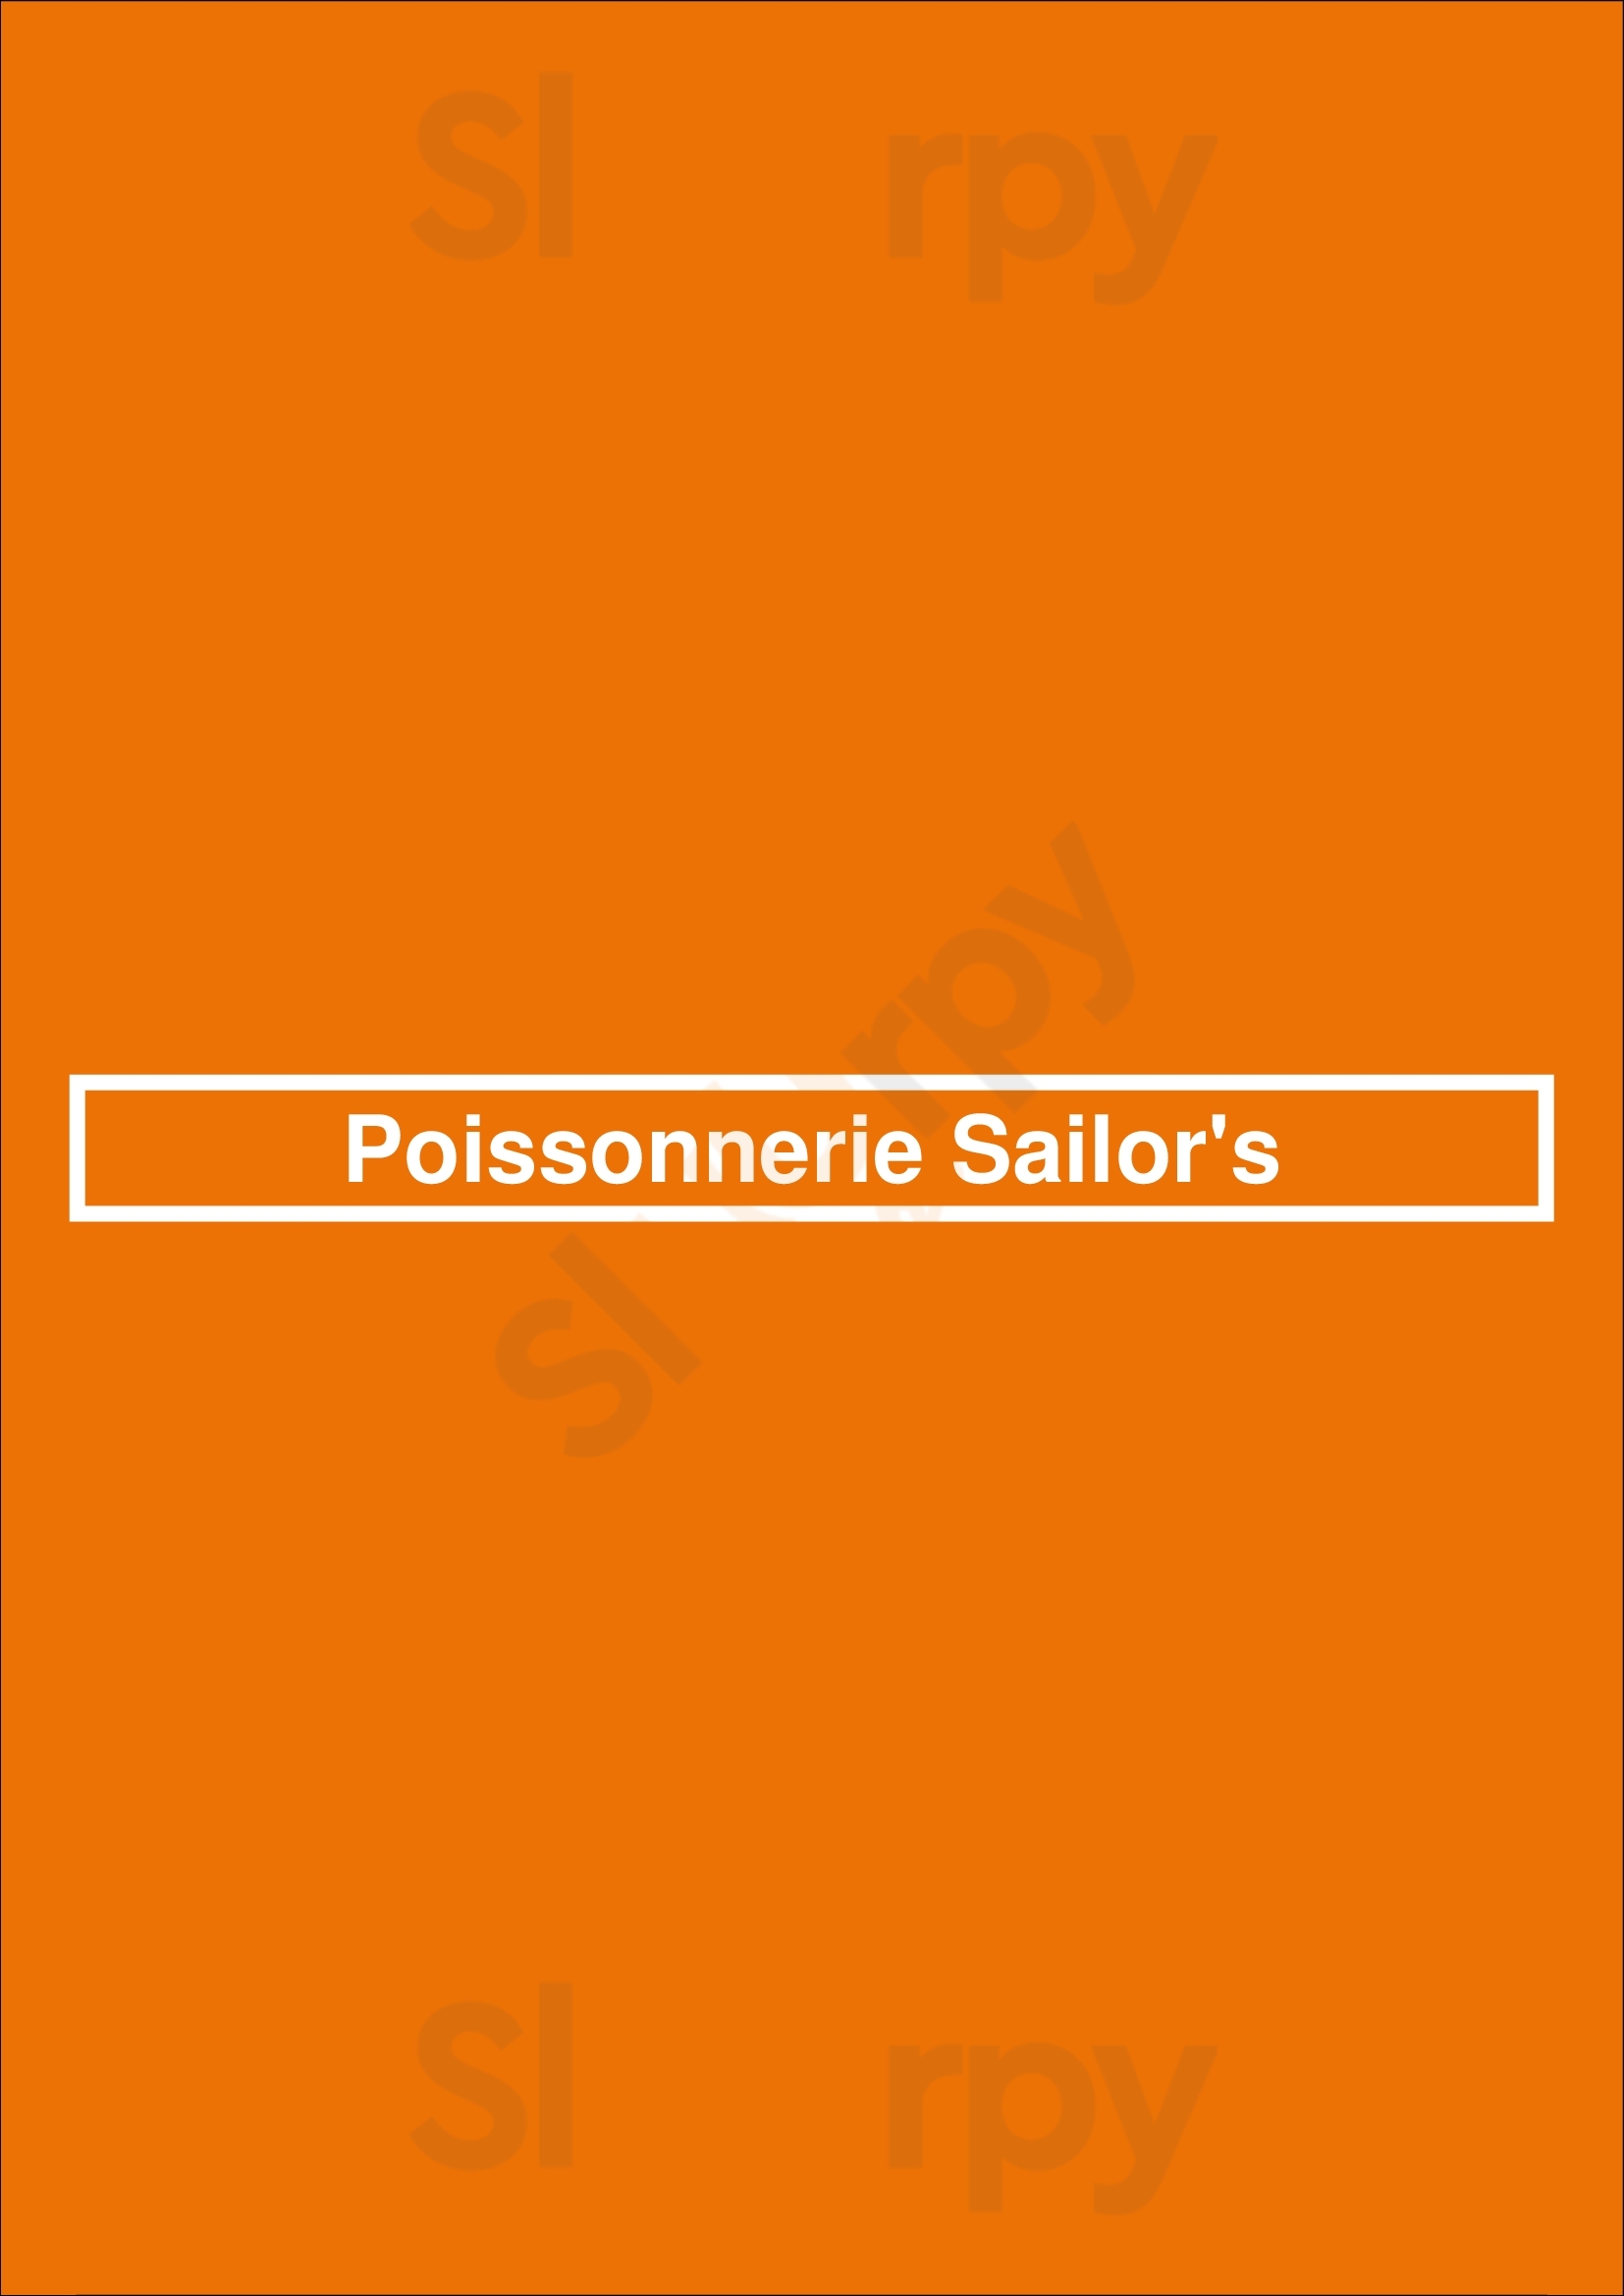 Poissonnerie Sailor's Montreal Menu - 1